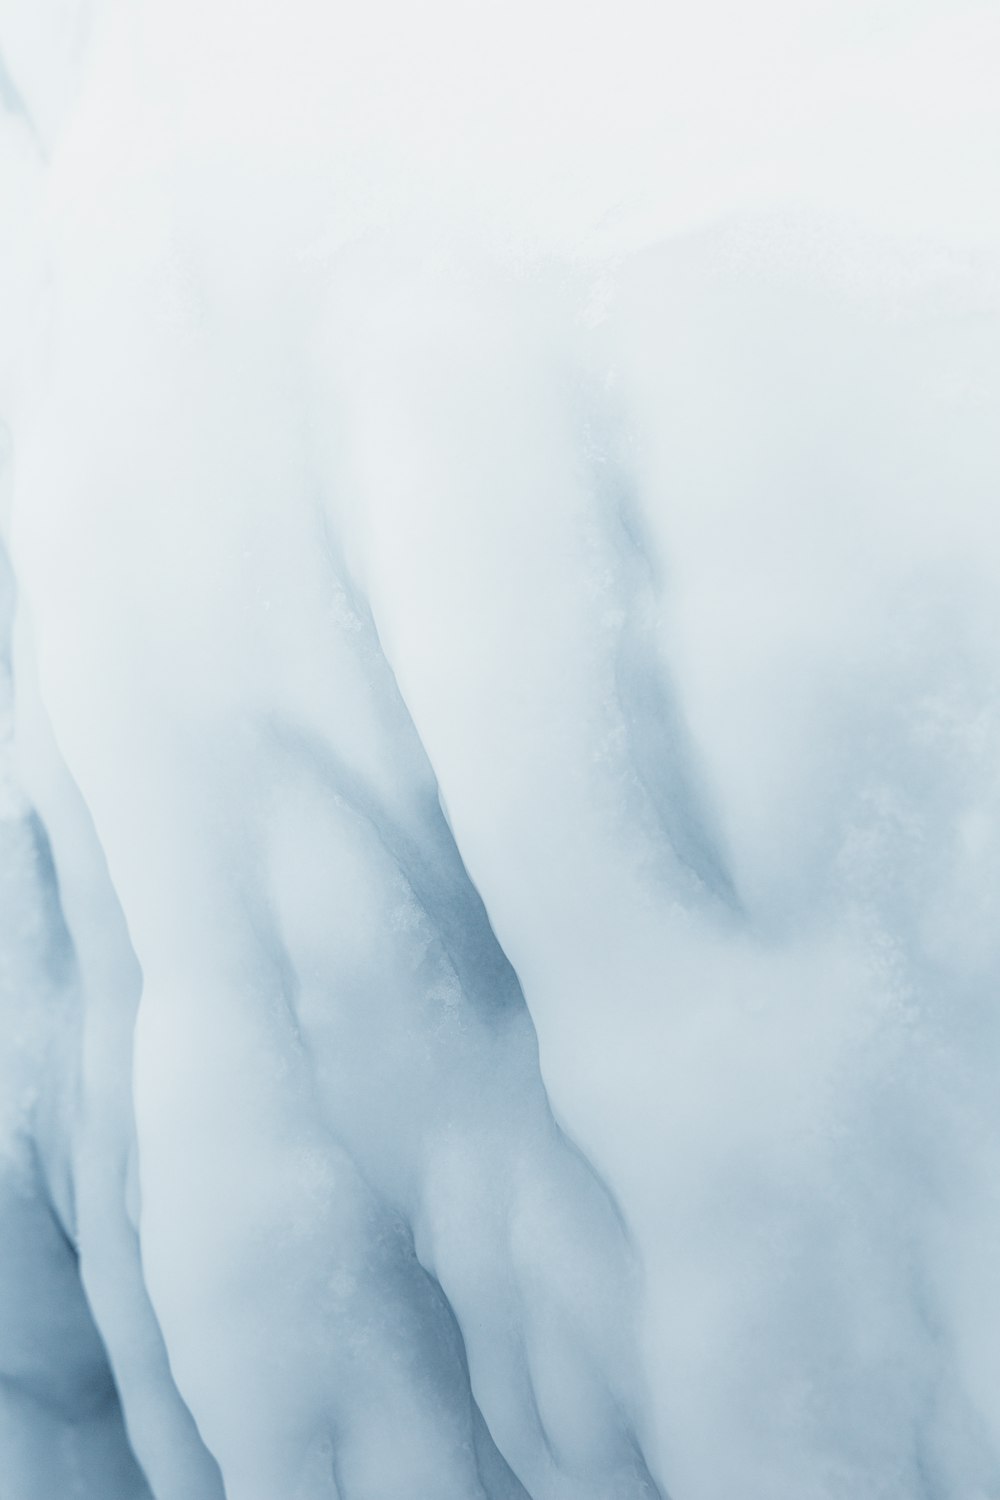 um grande iceberg com neve em seus lados